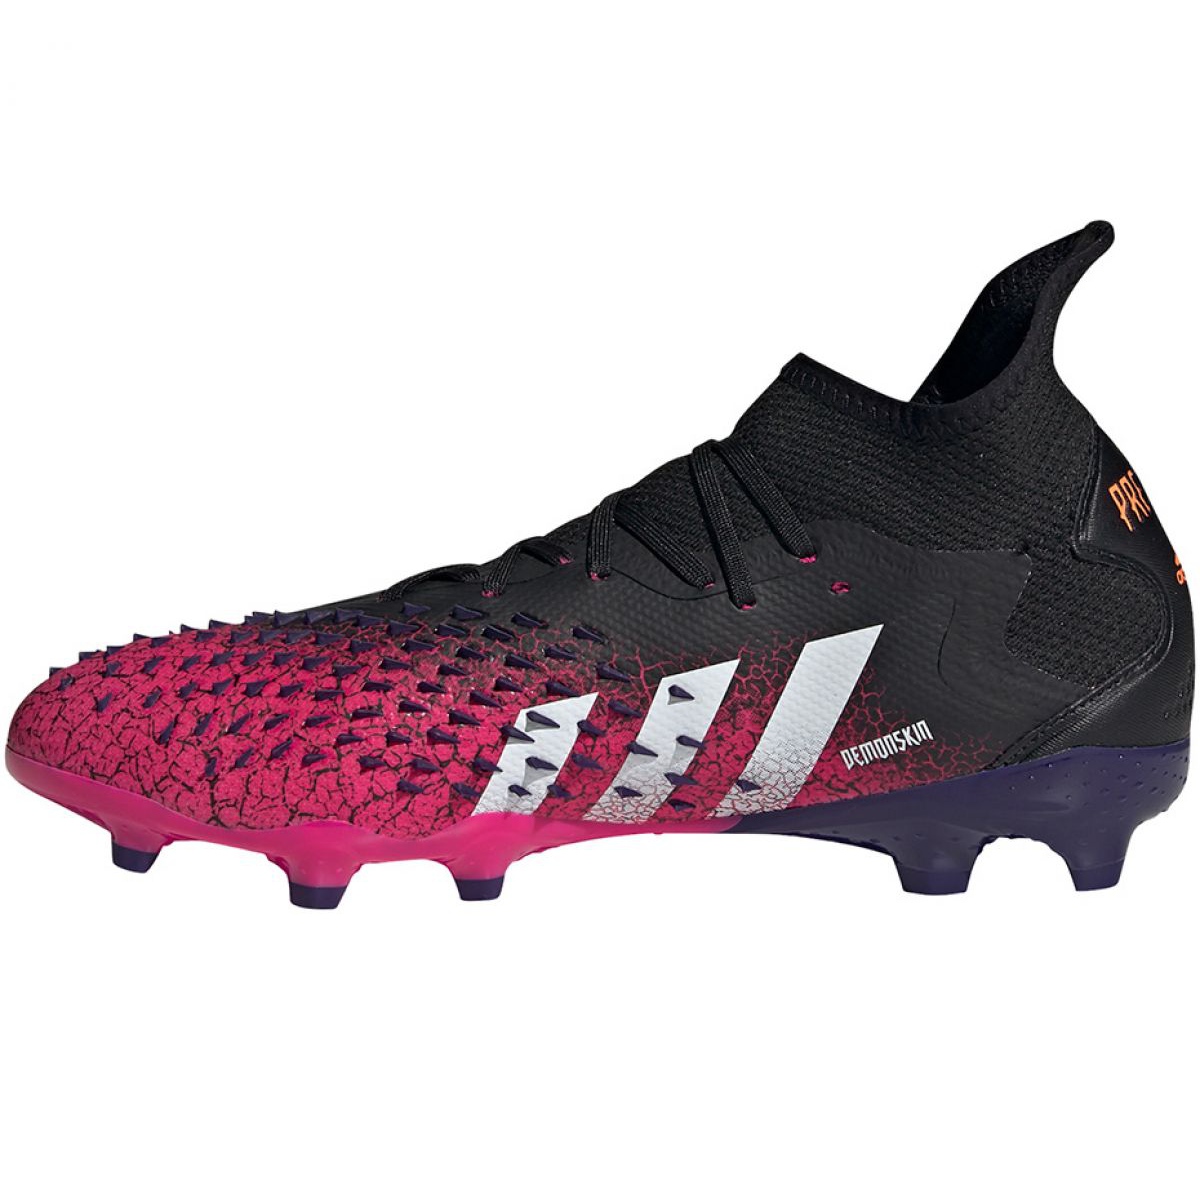 Buty piłkarskie adidas Predator Freak.2 Fg S42981 wielokolorowe różowe